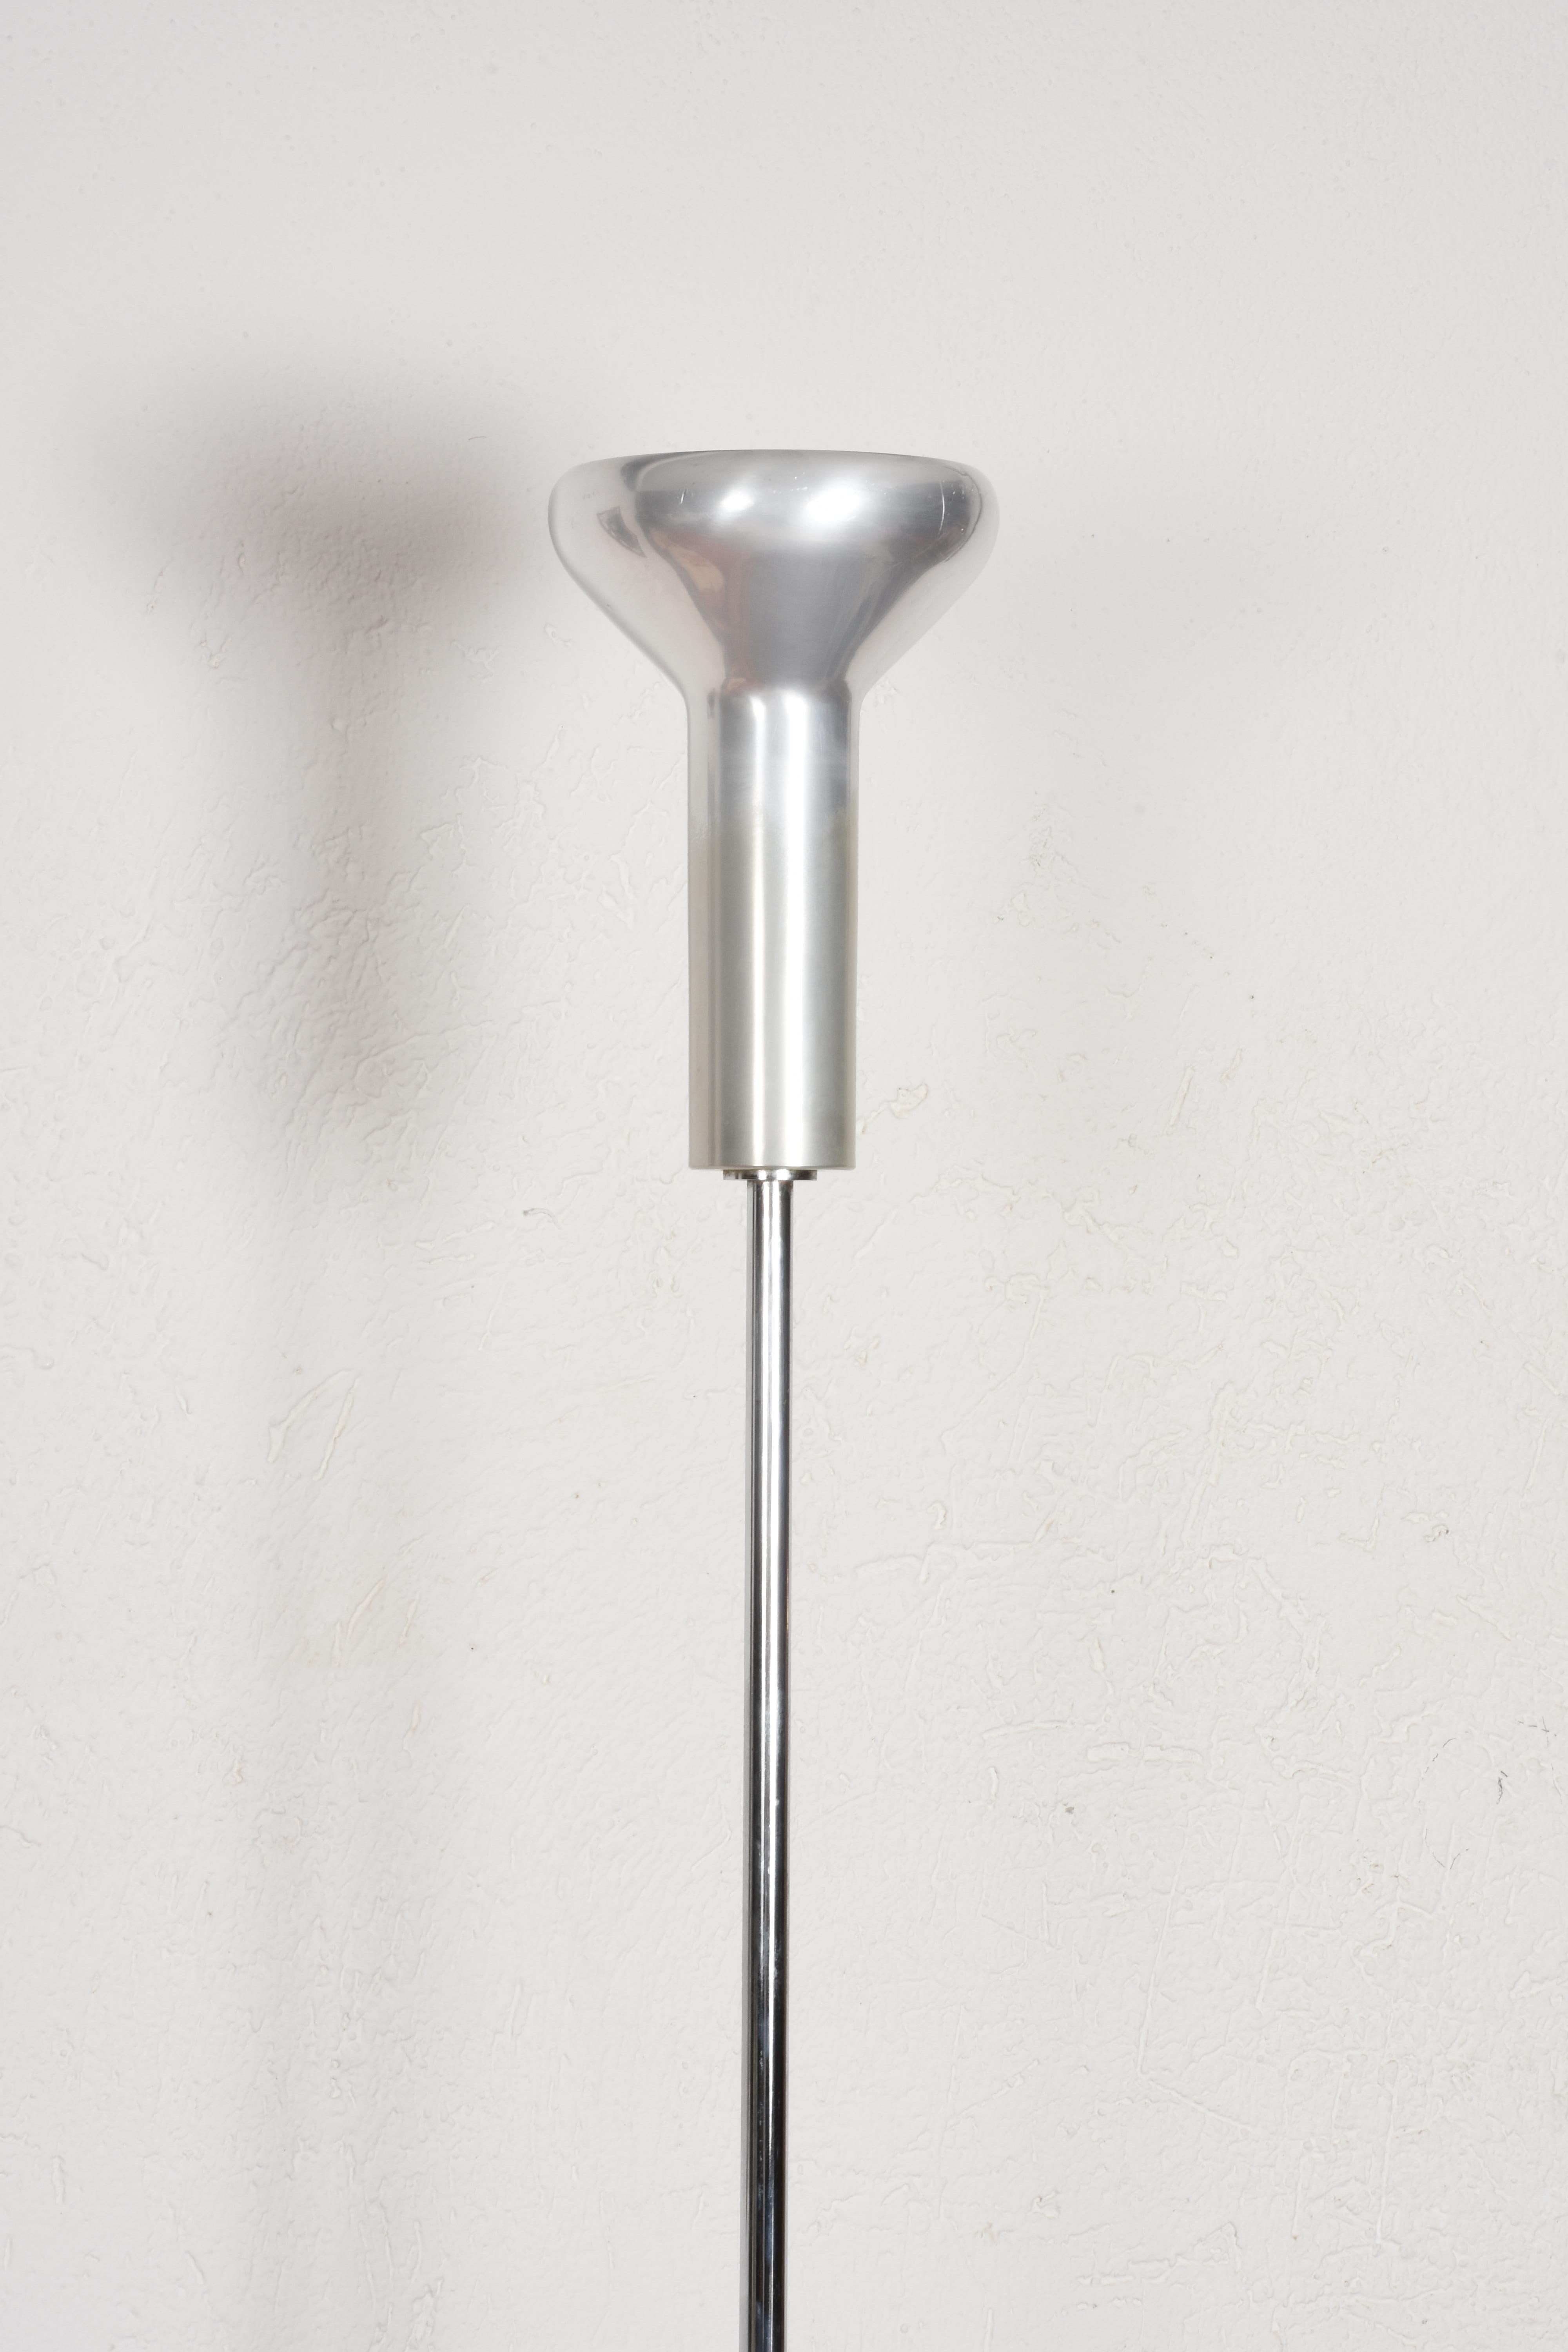 Mid-20th Century Midcentury Gino Sarfatti Chrome Aluminum Italian 1073 Floor Lamp, Arteluce 1950s